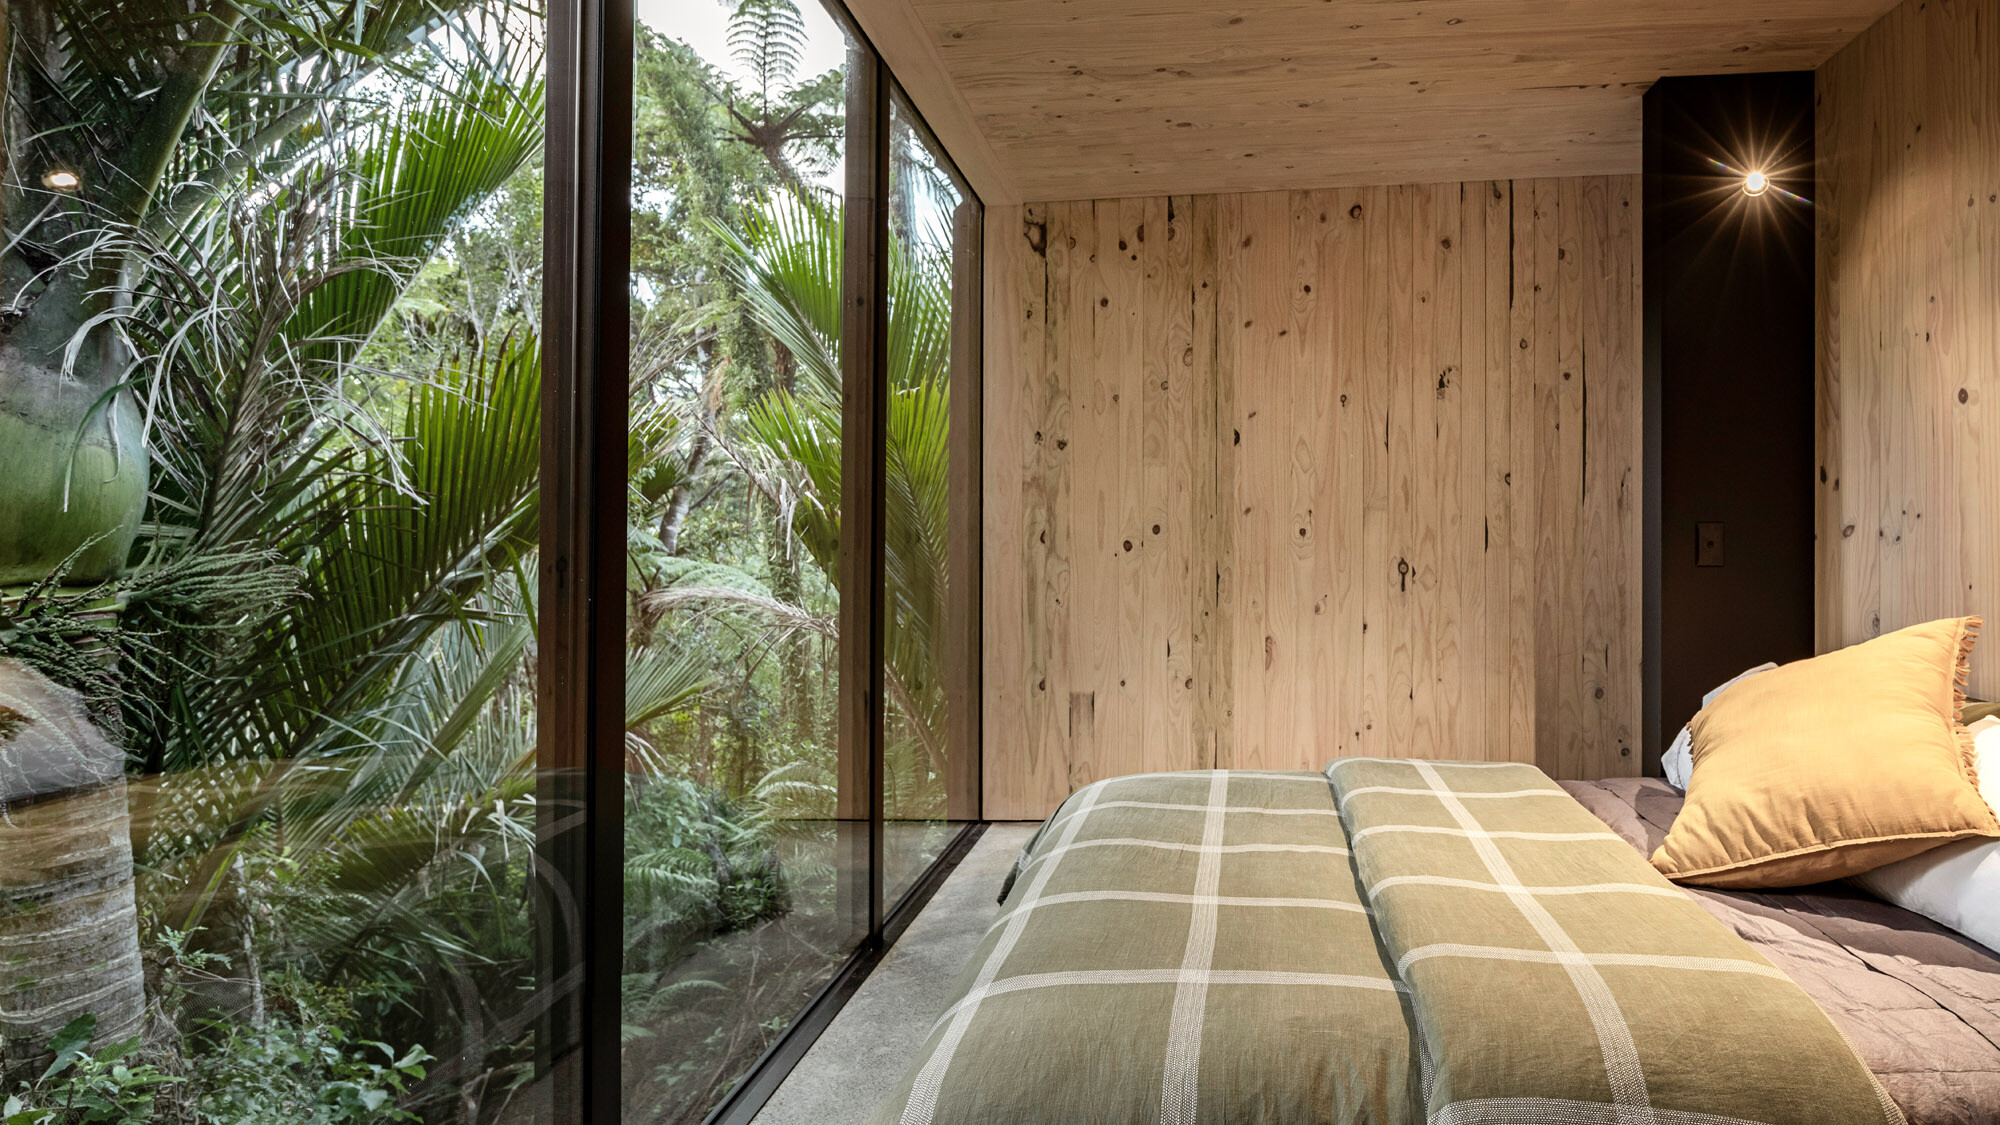 Ložnice s oknem od podlahy ke stropu, která je přímo spojena s džunglí.